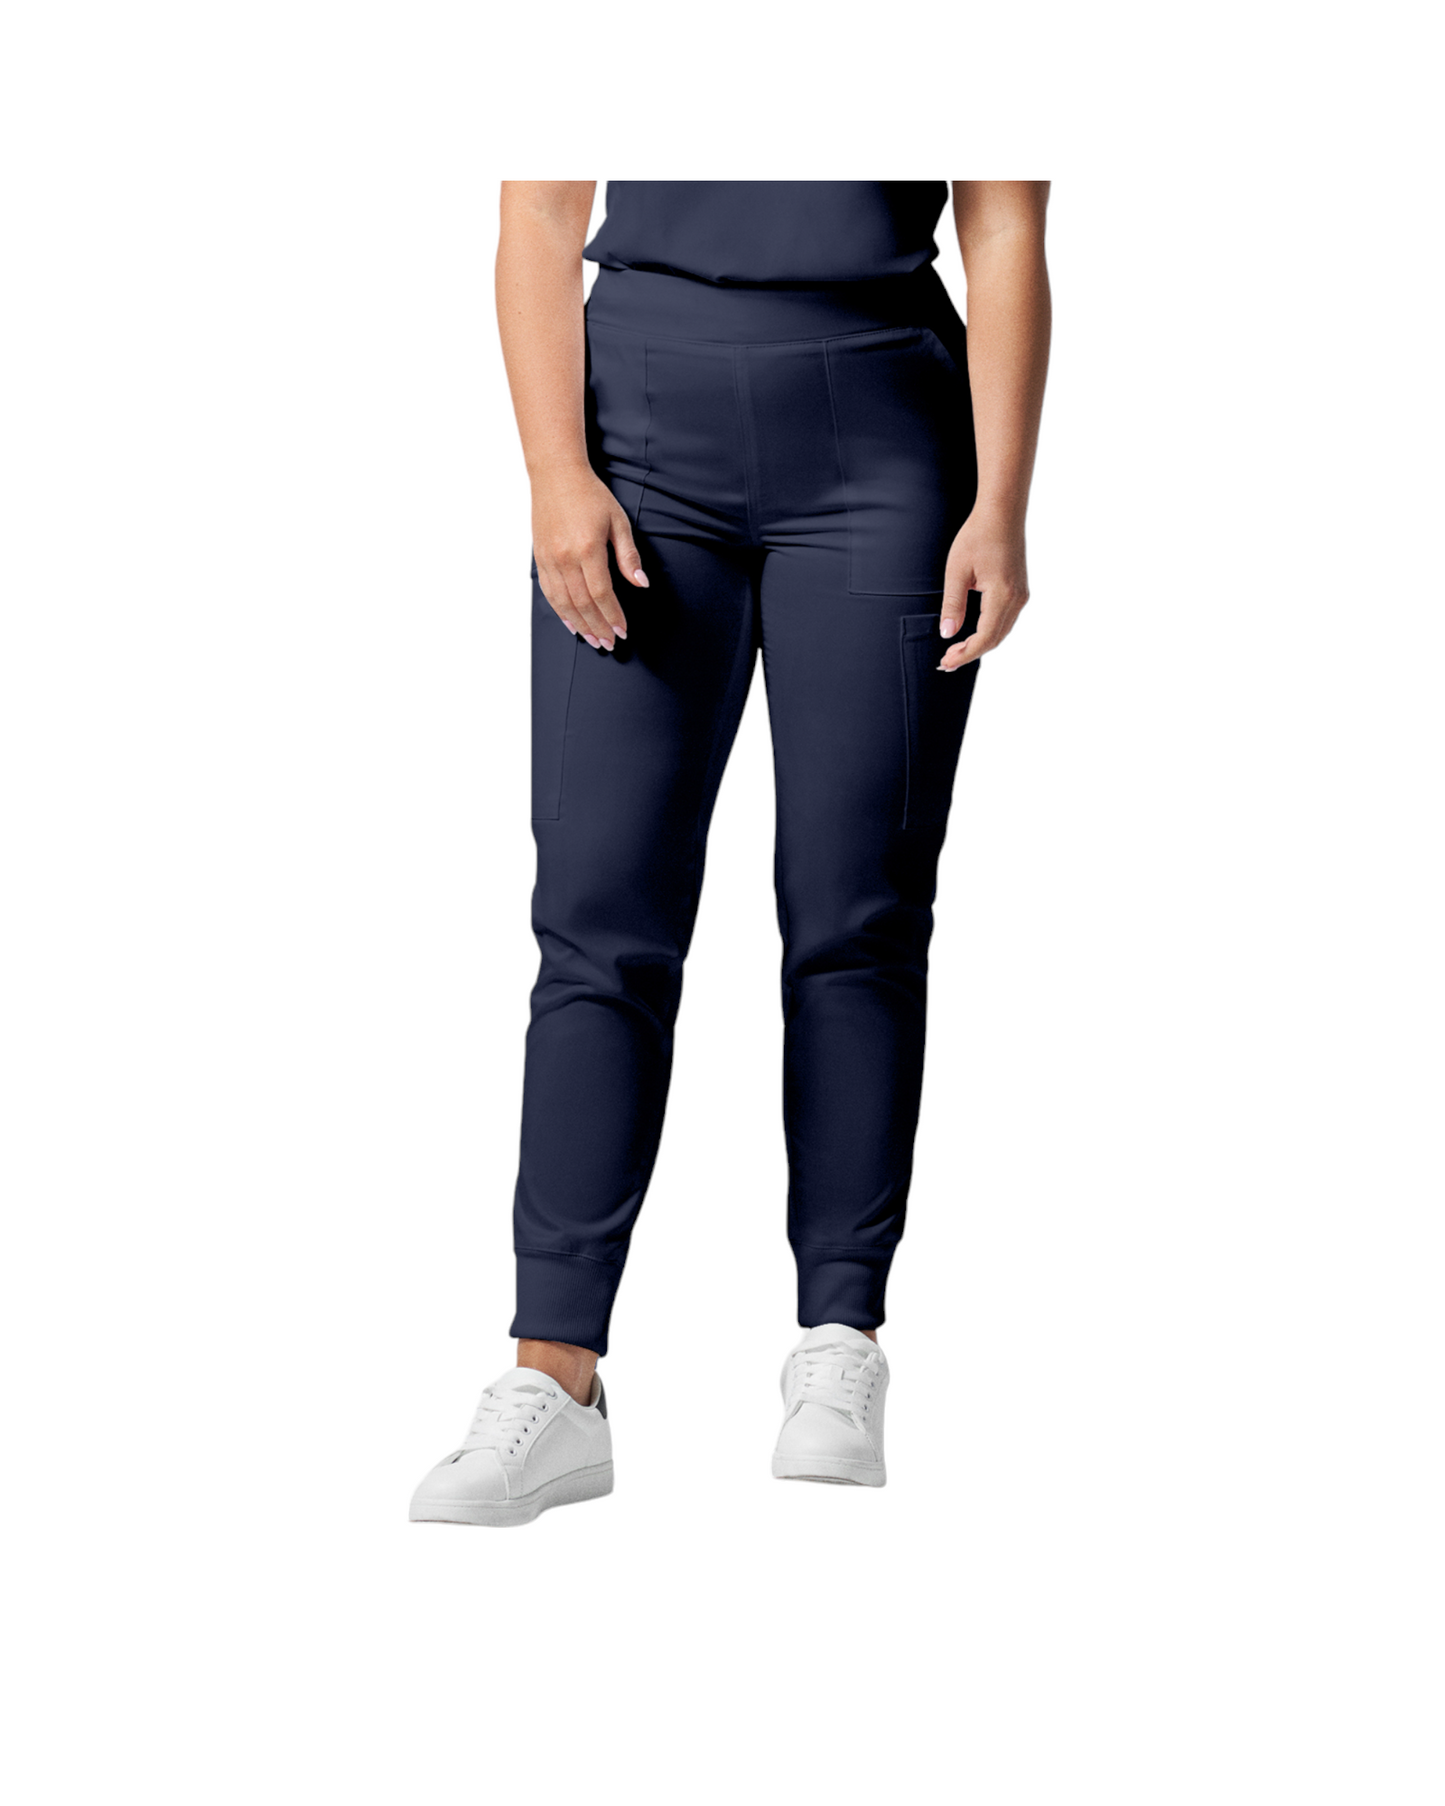 Pantalon de style jogger 6 poches pour femmes Landau Proflex #LB406-OS couleur Marine